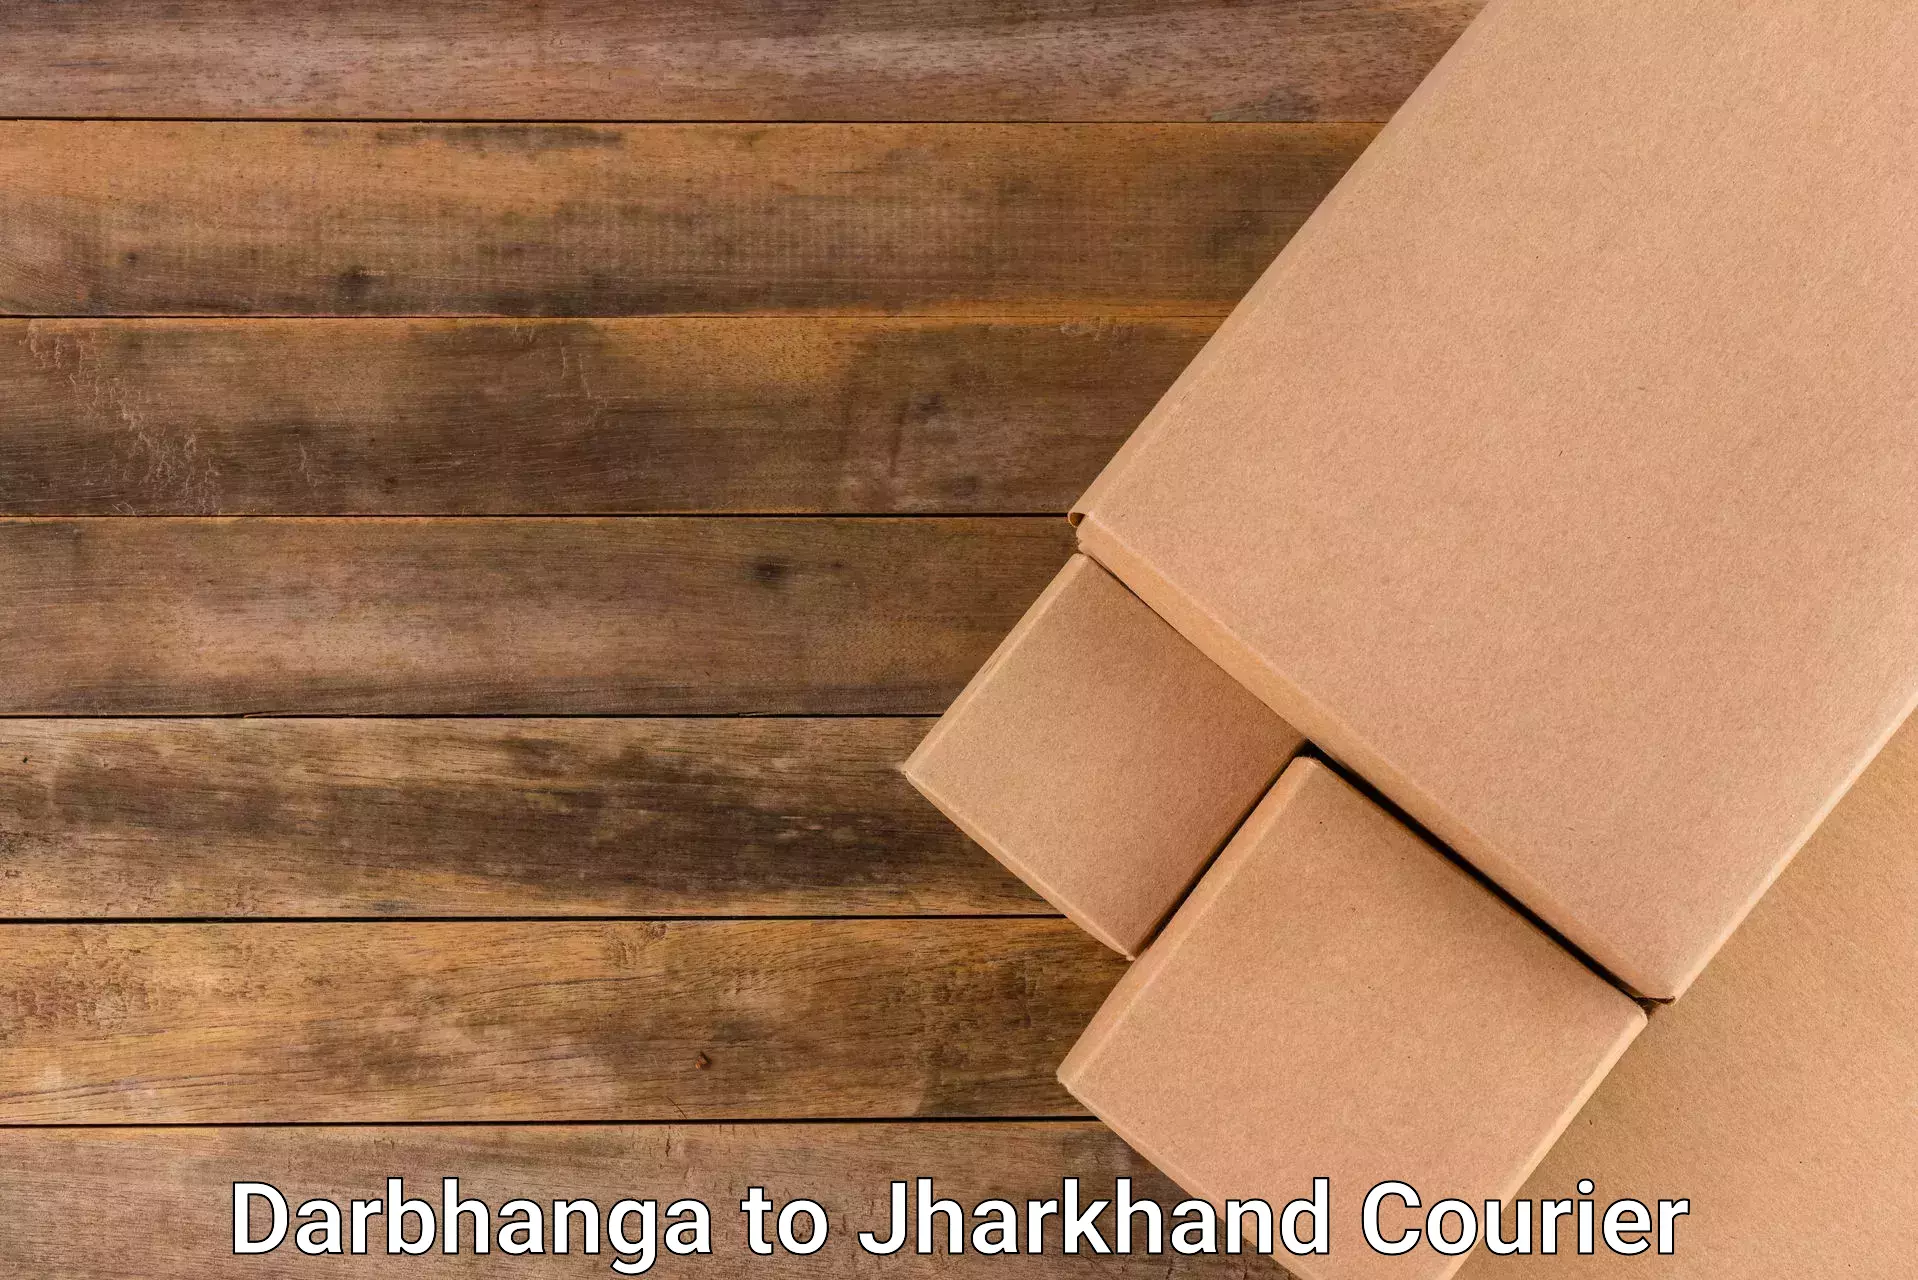 Urgent courier needs Darbhanga to Jharia